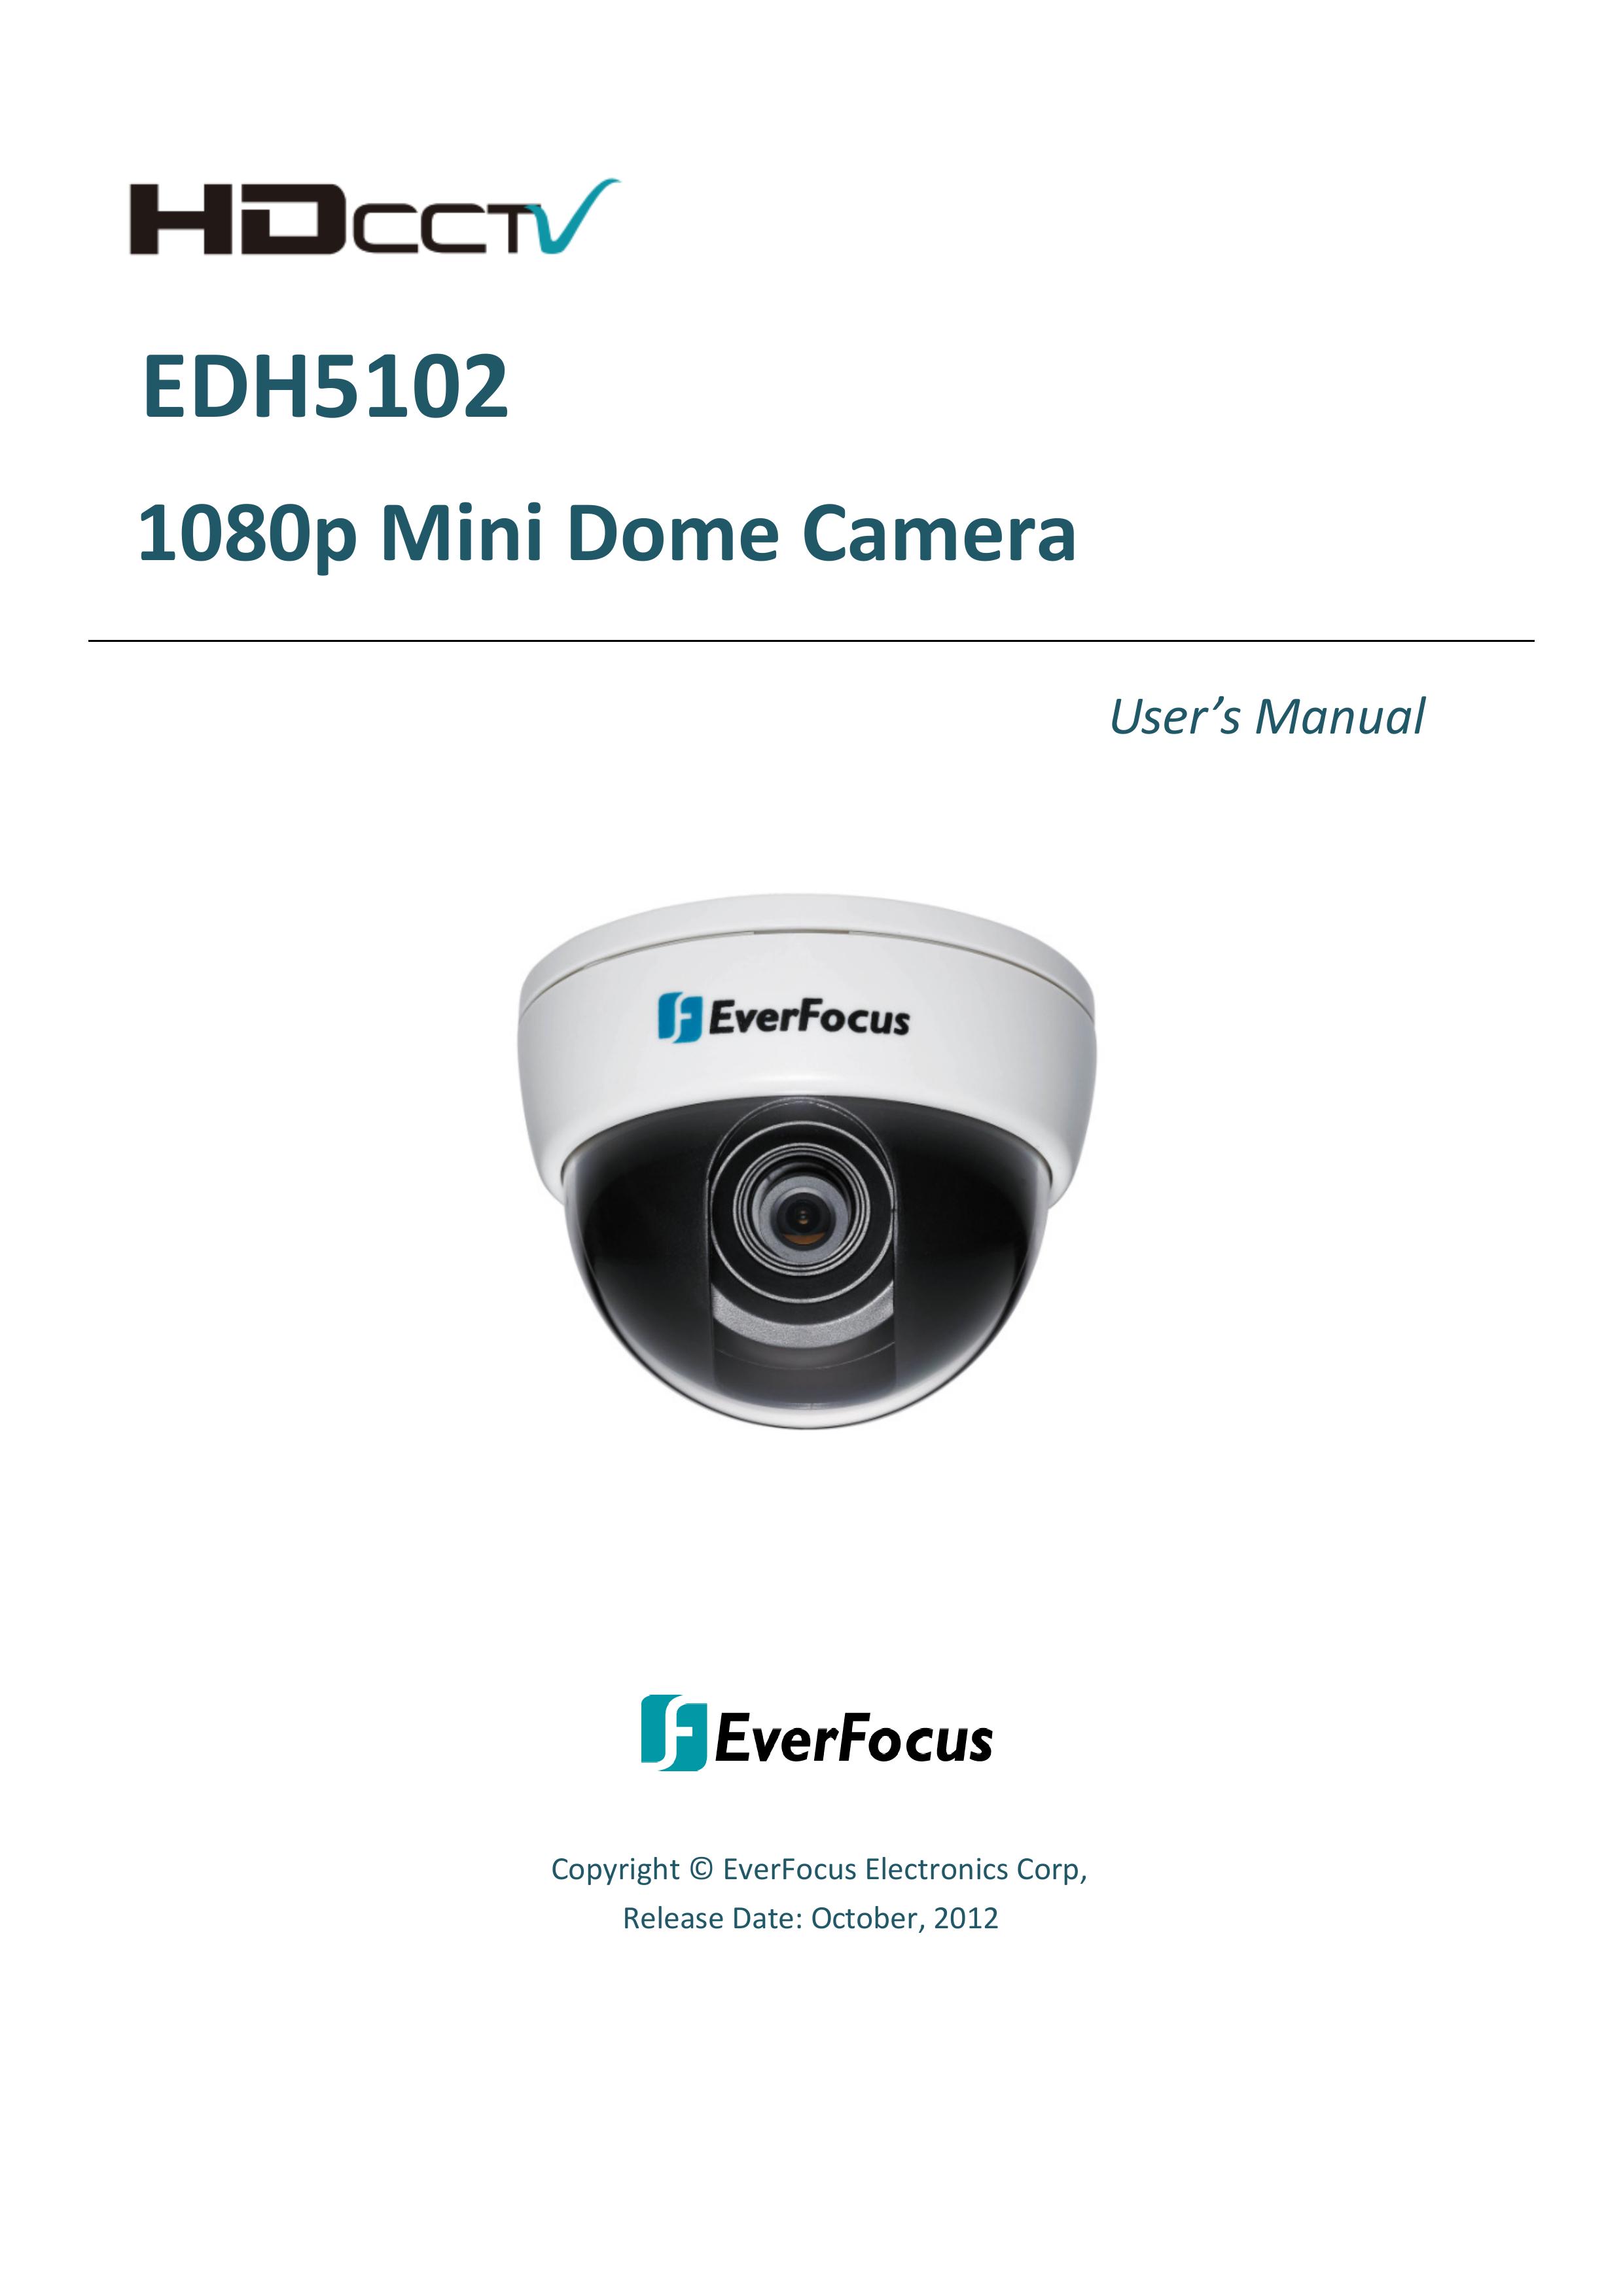 EverFocus EDH5102 Camera Accessories User Manual